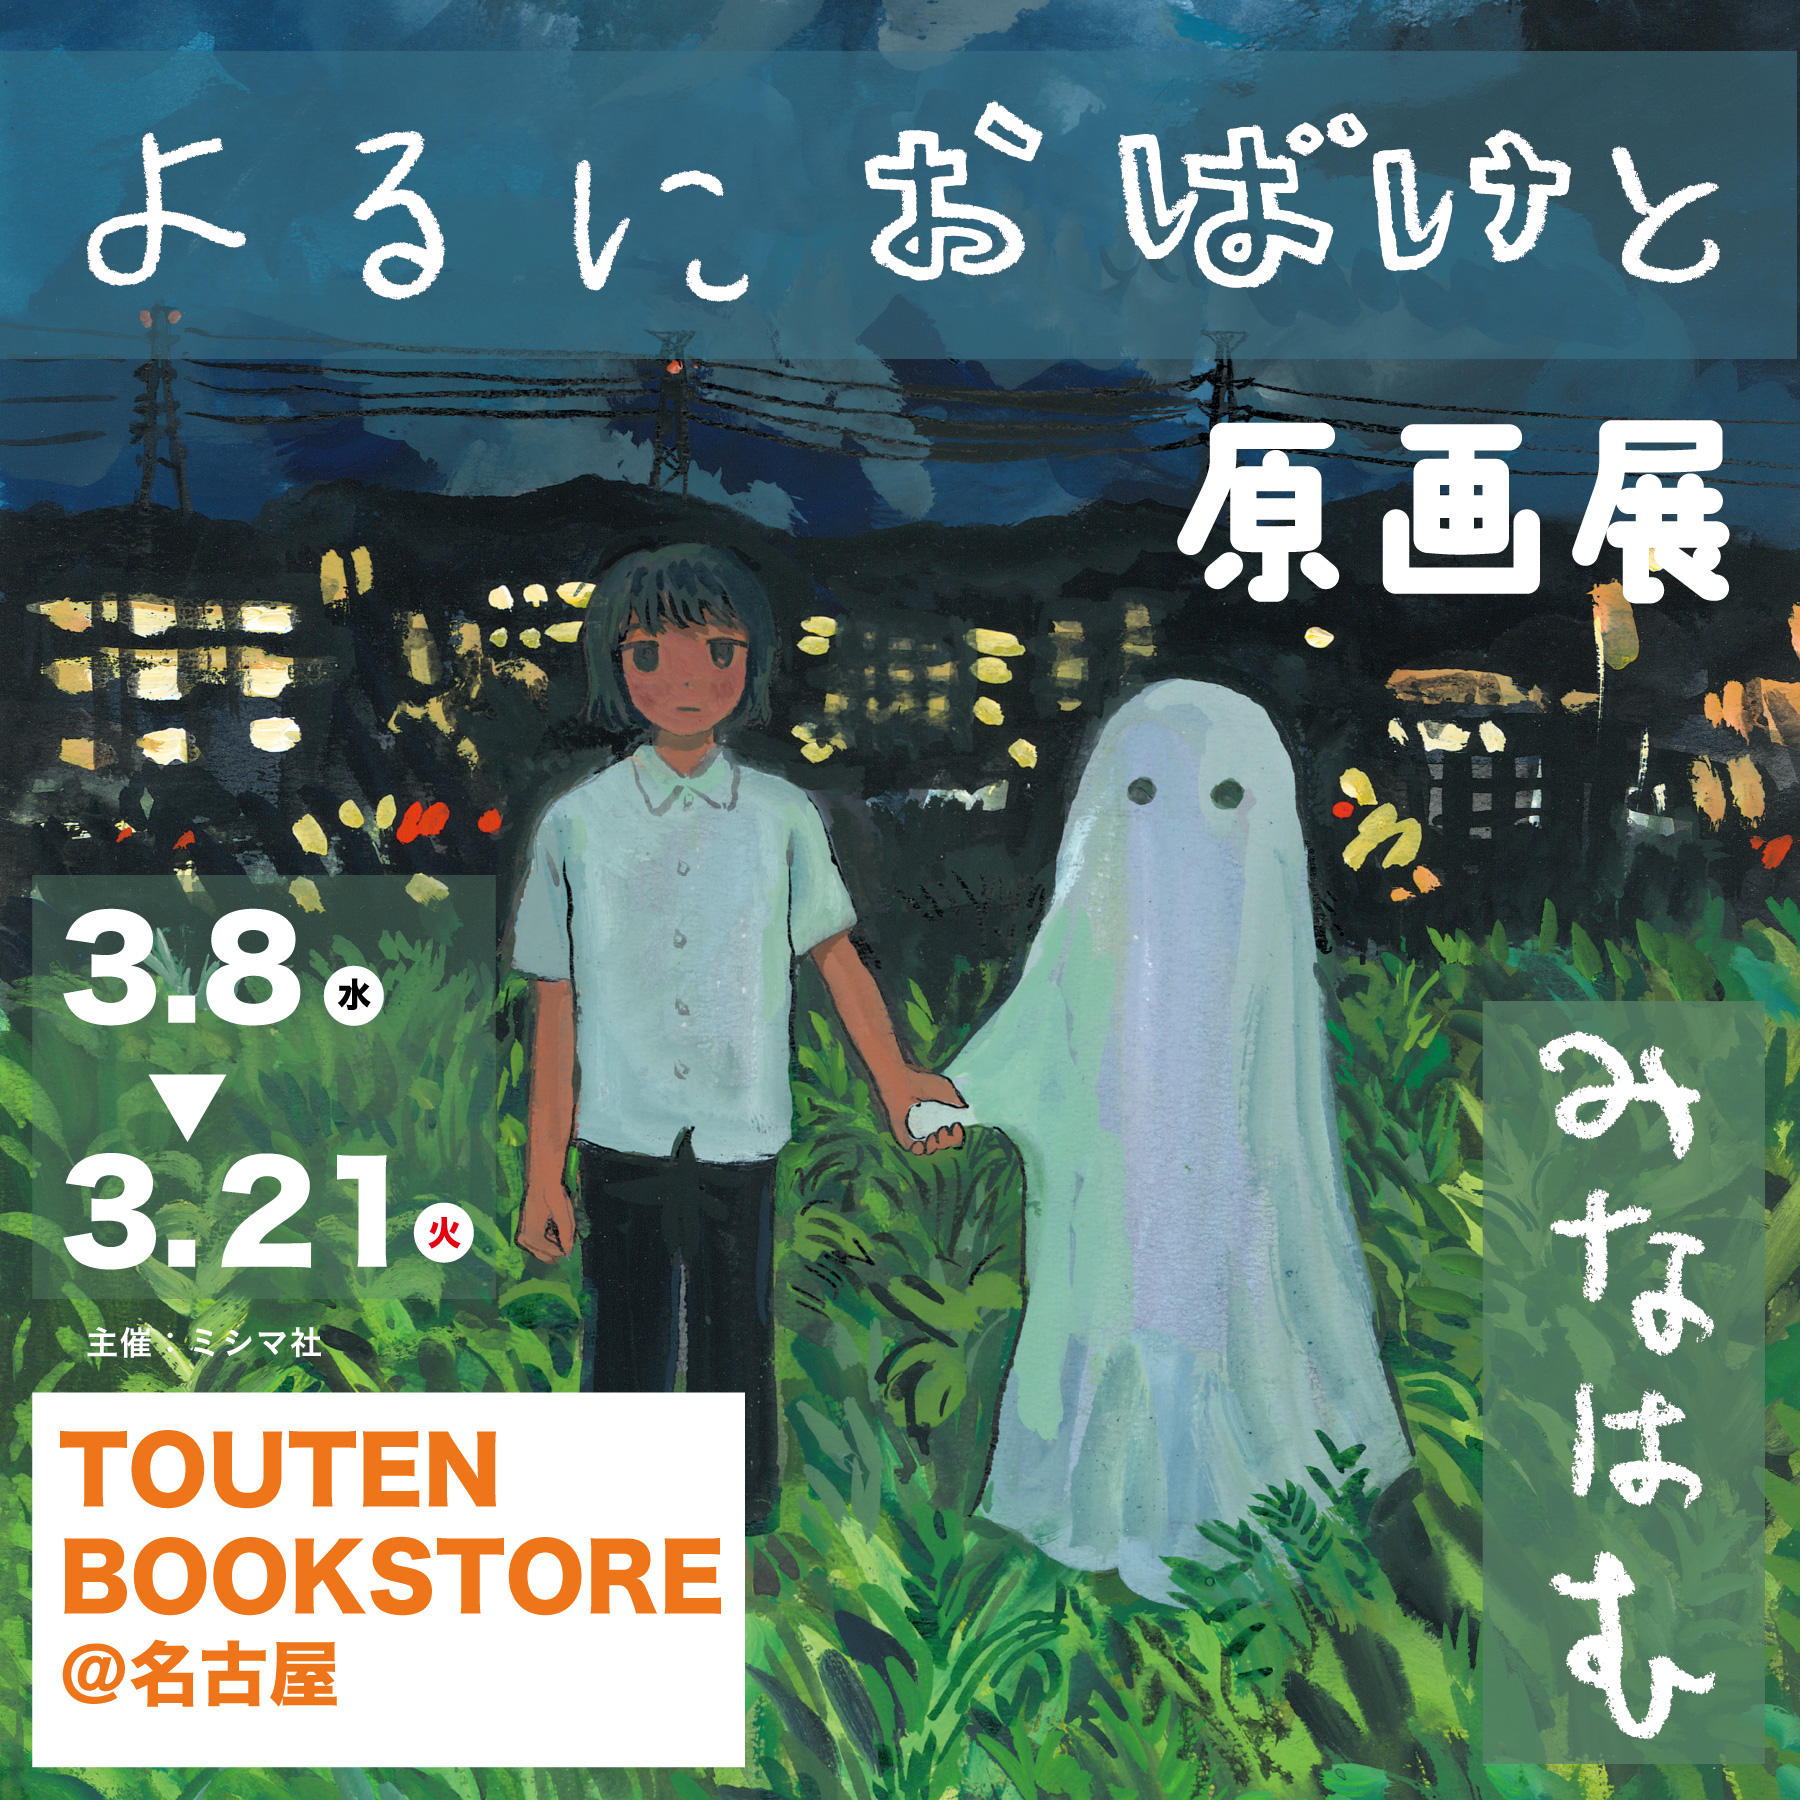 【展示】3/8(水)〜3/21(火) みなはむ『よるにおばけと』原画展【 TOUTEN BOOKSTORE@名古屋】開催します！